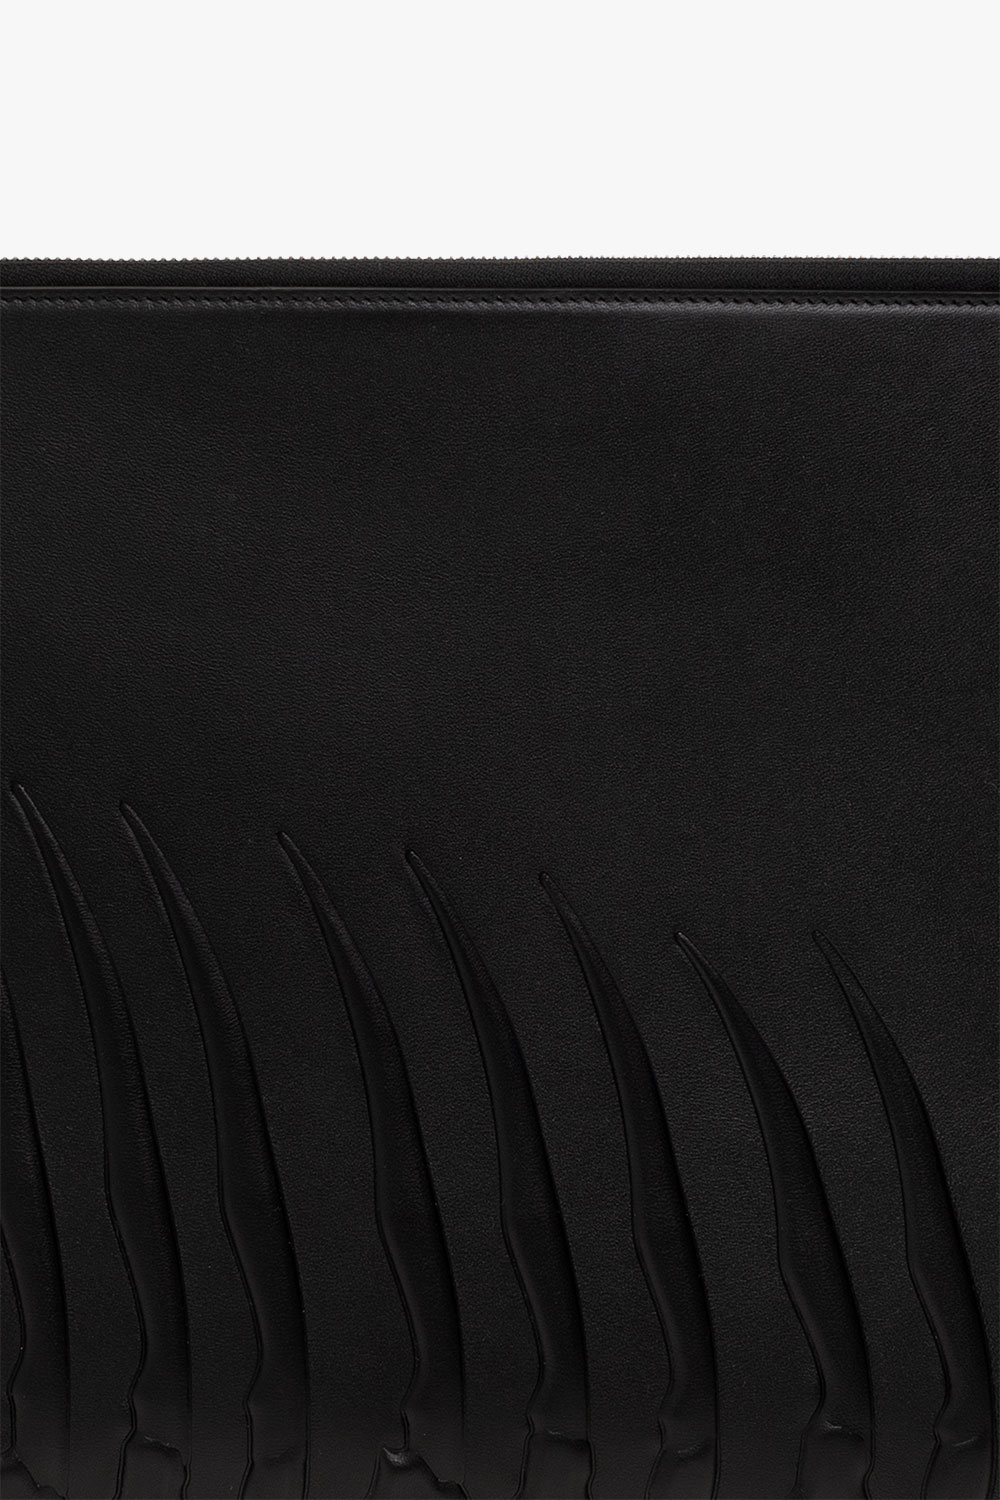 Alexander McQueen Leather briefcase